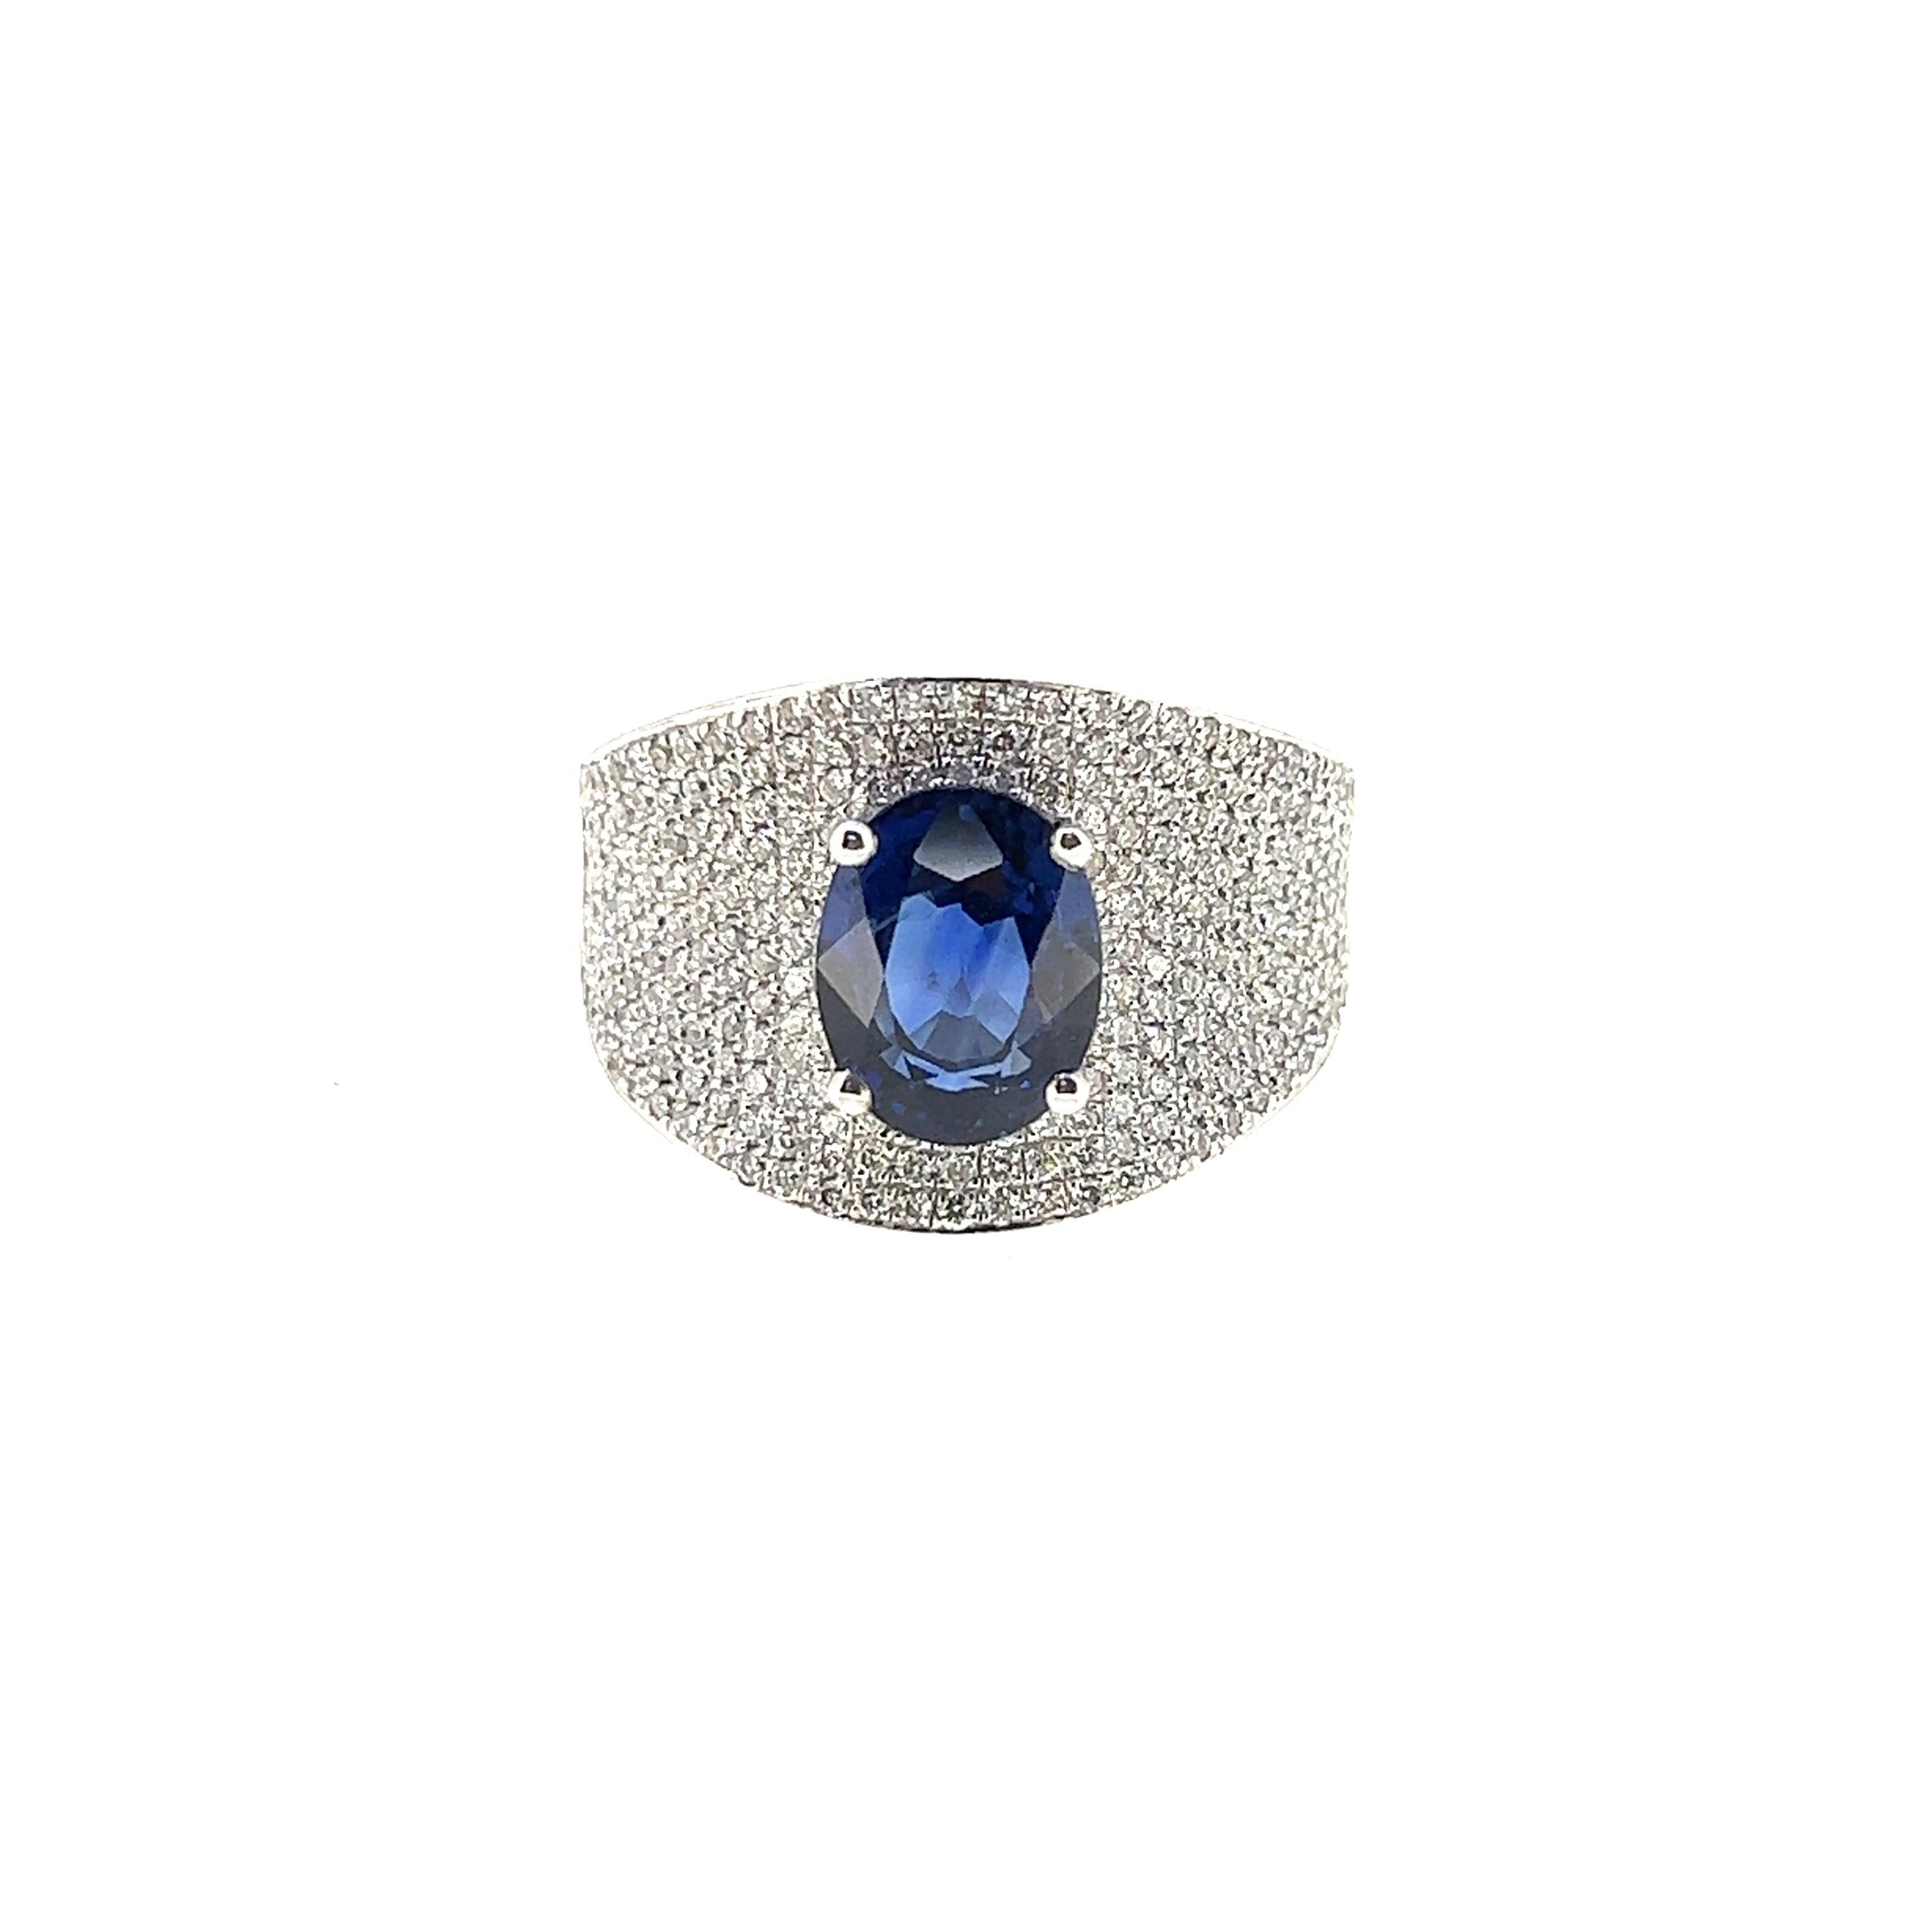 Dieser ovale Saphirring mit 3,05 Karat ist einfach nur schön. Dieses bemerkenswerte Stück besteht aus 251 Diamanten mit rundem Brillantschliff und einem Gewicht von 0,89 Karat, gefasst in 18 Karat Weißgold. 

Saphir: 3.05 Karat
Diamant: 0,89